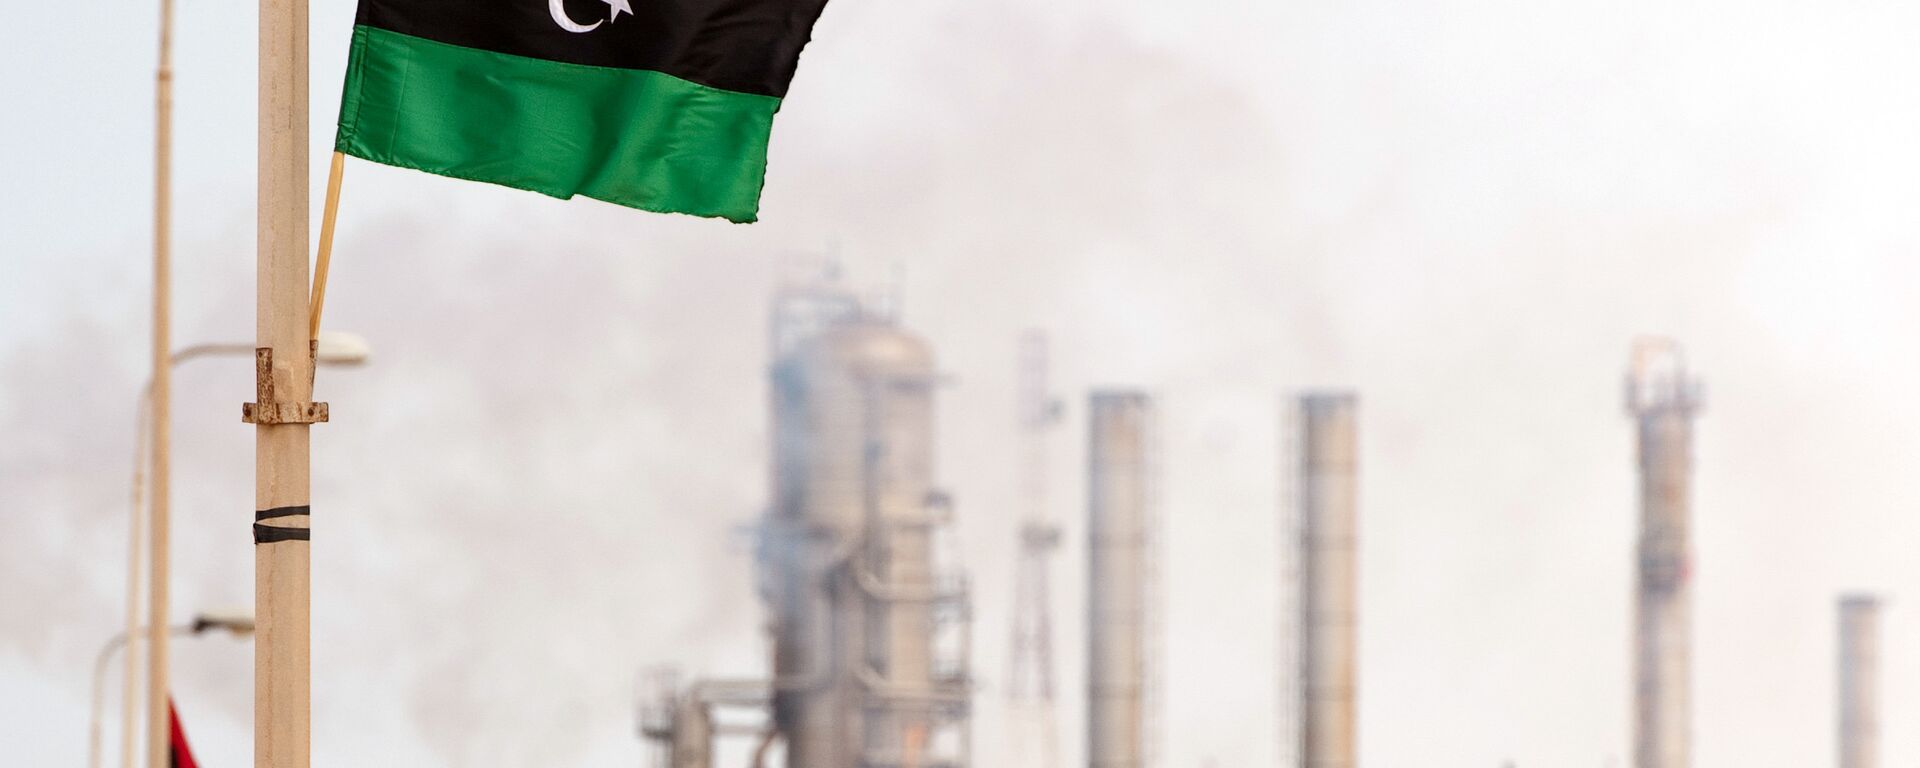 Le drapeau libyen flotte devant une raffinerie de pétrole - Sputnik Afrique, 1920, 18.12.2020